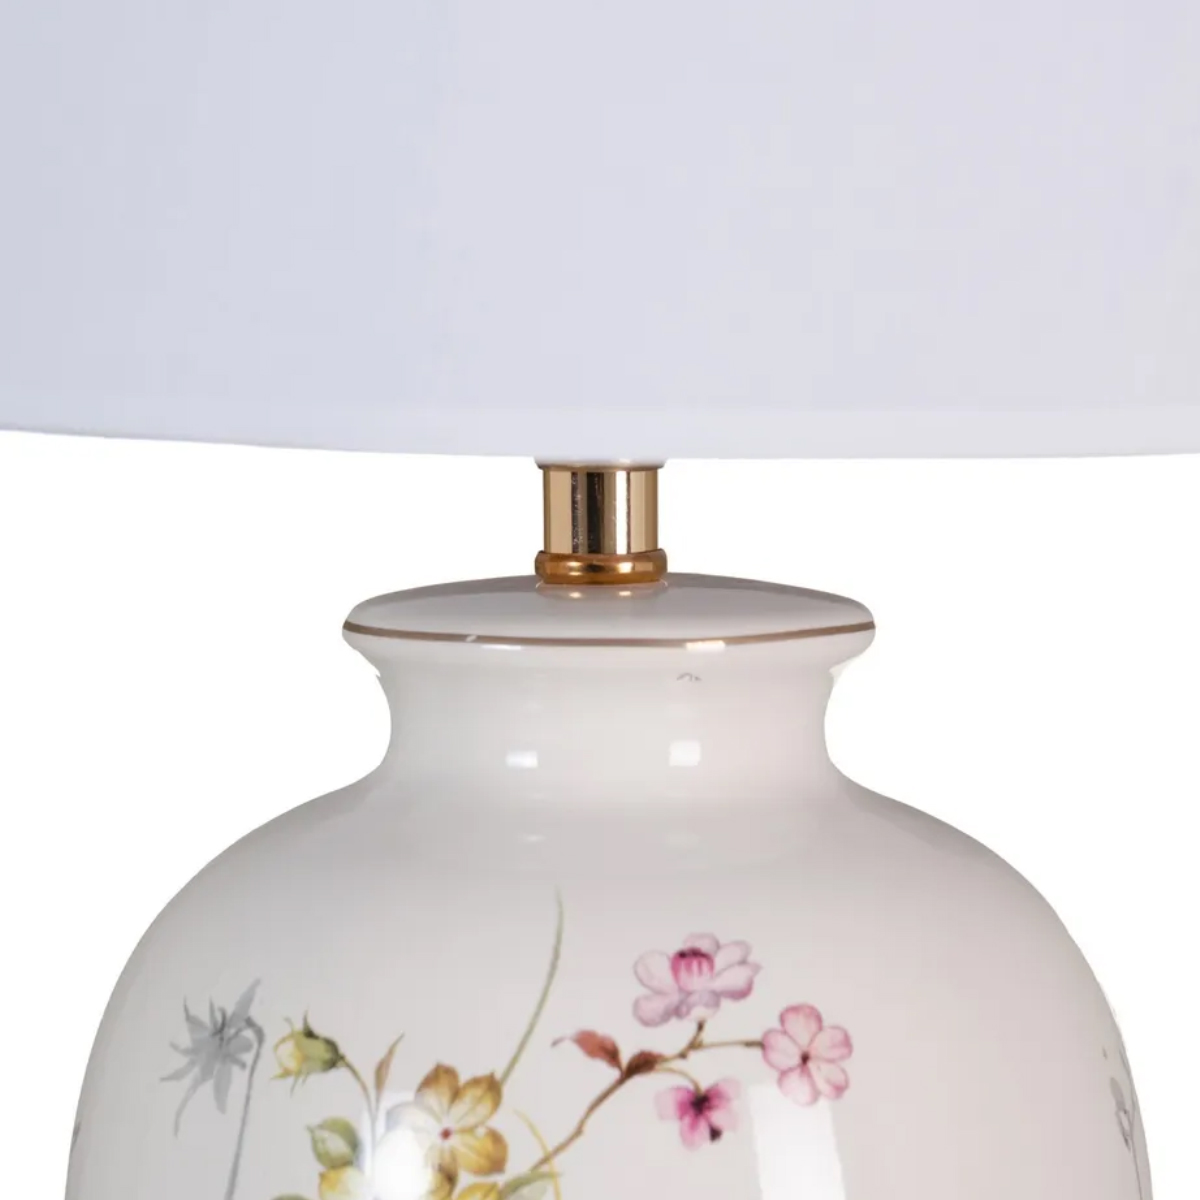 Floral ceramic lamp 54 cm